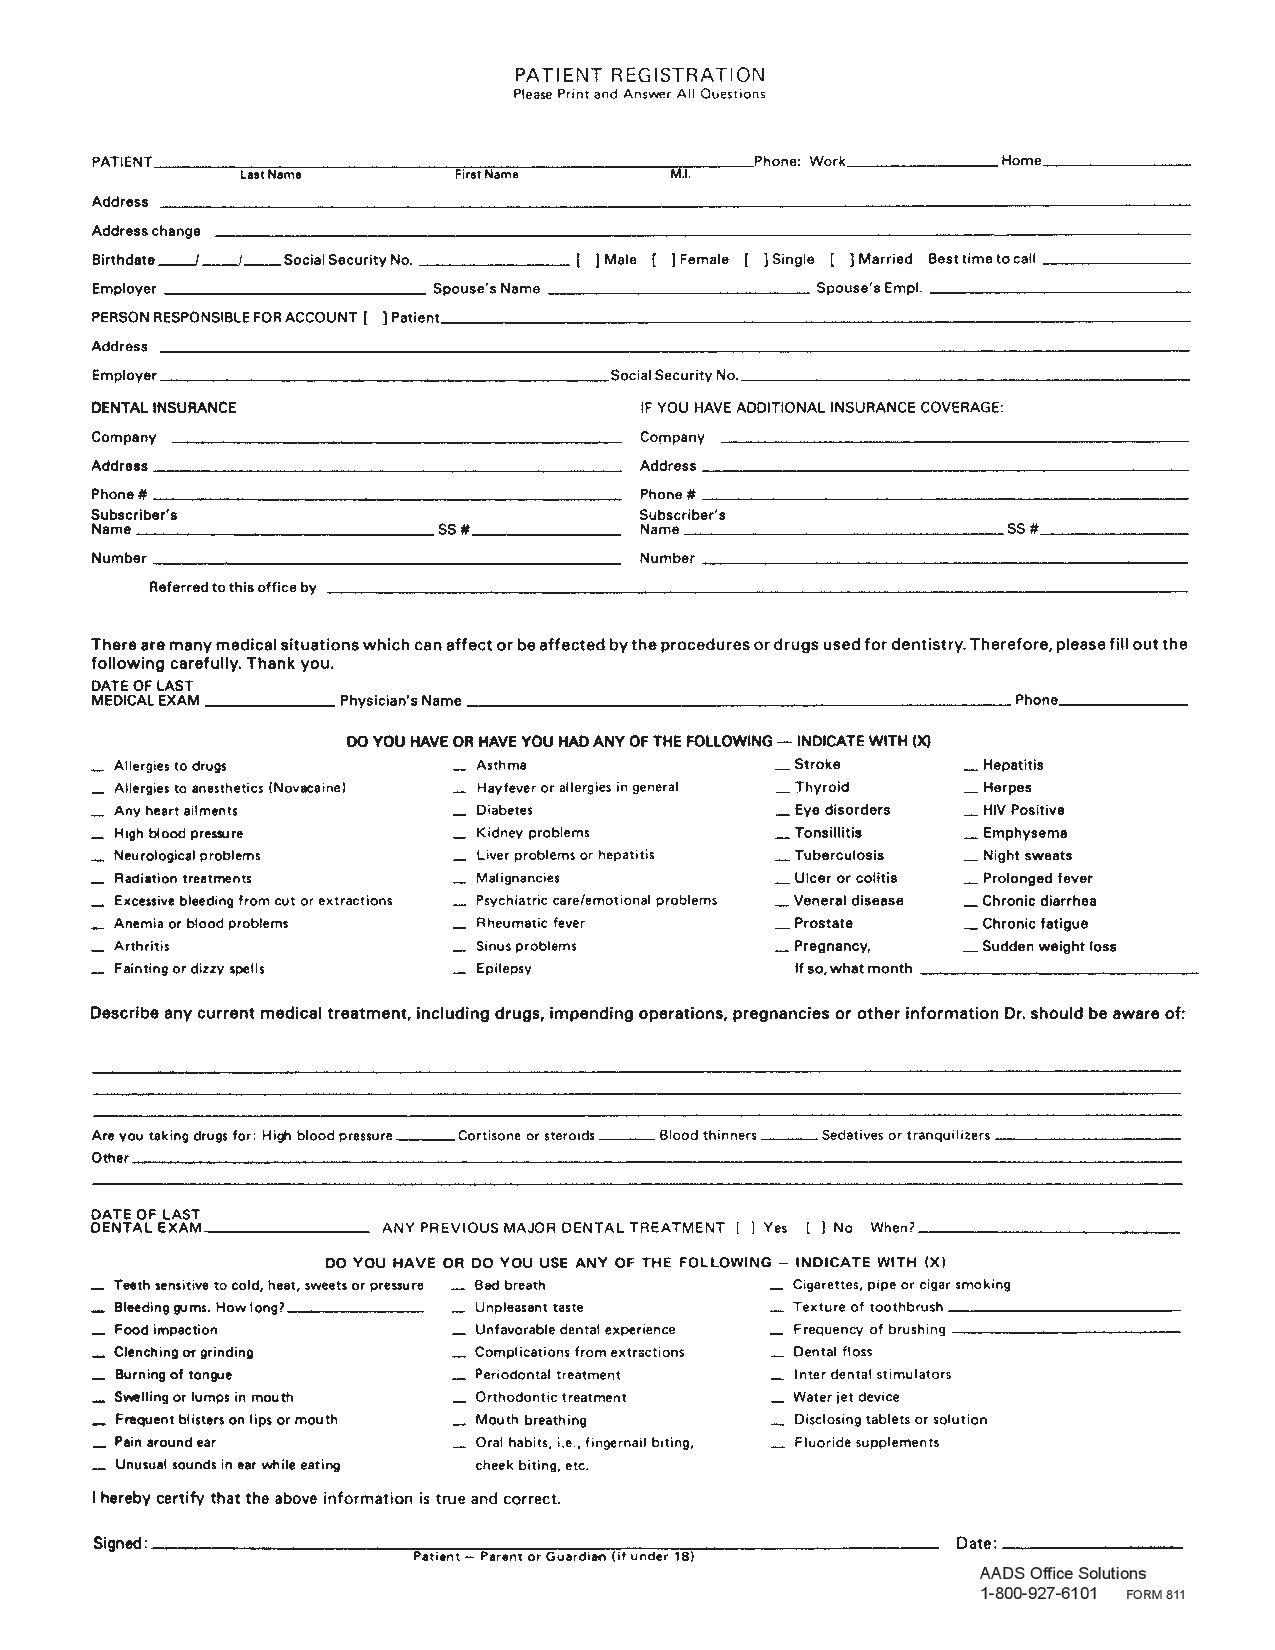 Patient Registration Form 100/PKG